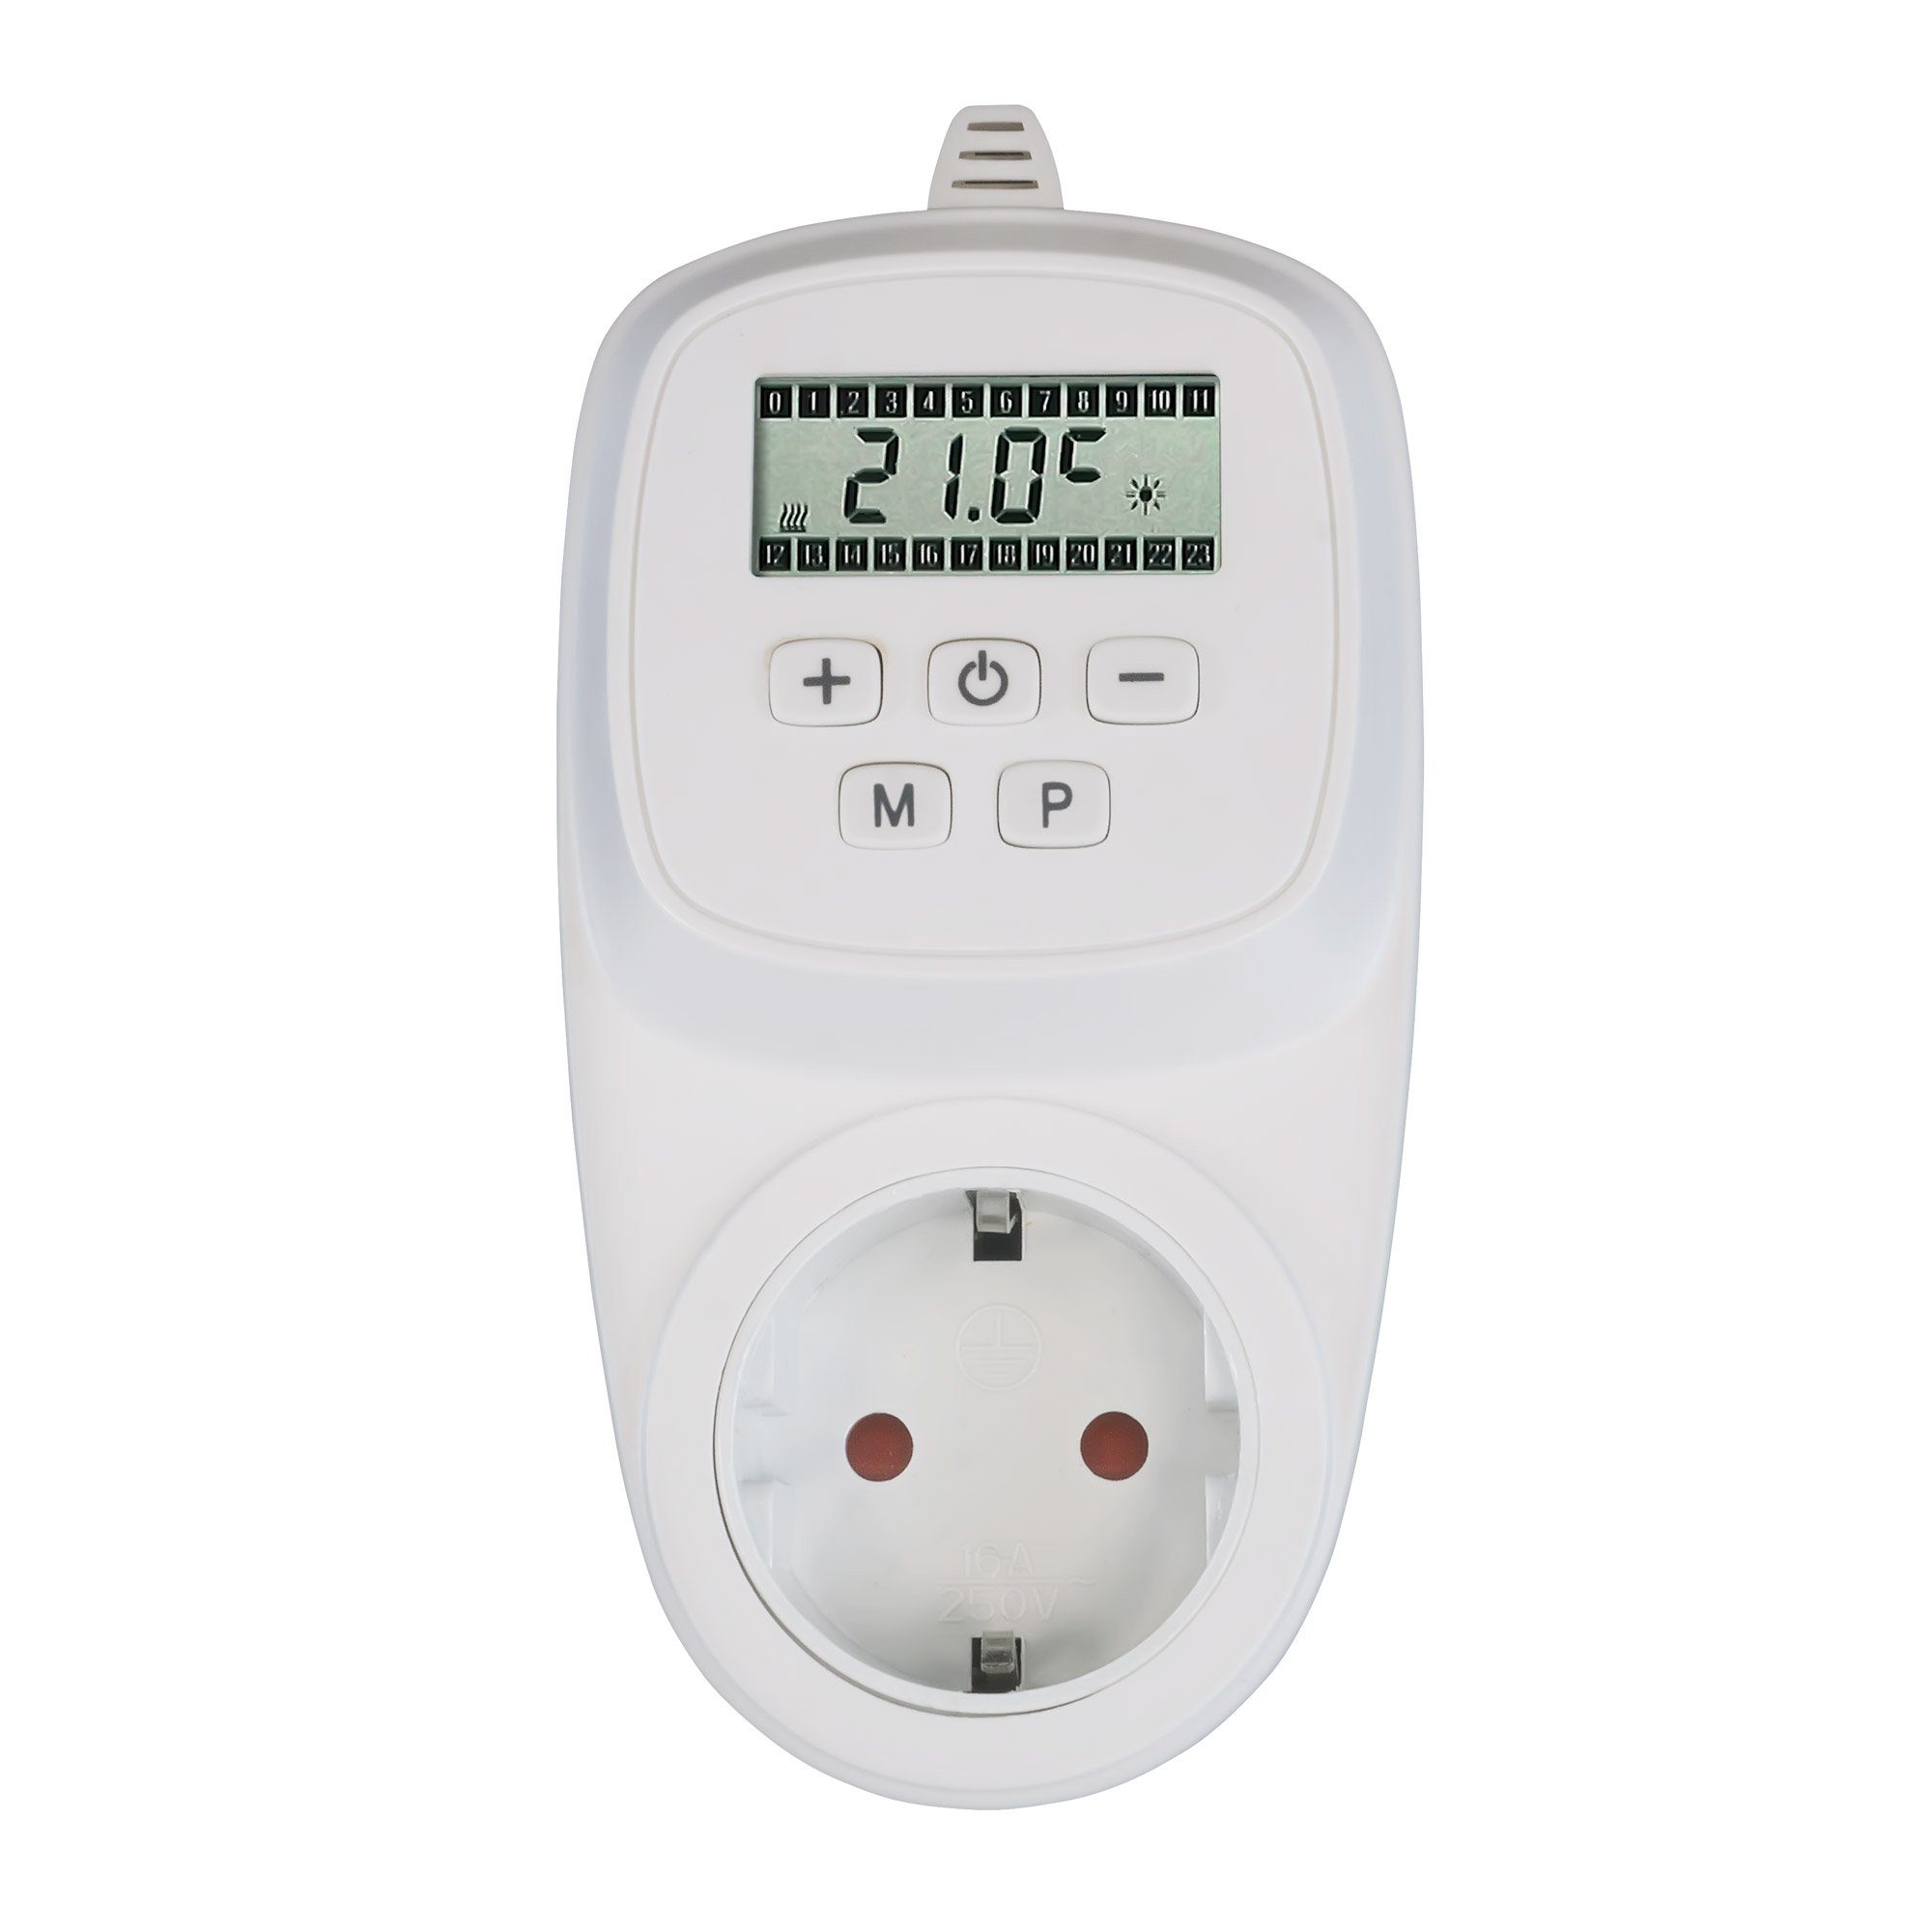 VIESTA Paneelheizkörper Infrarotheizung Thermostat + H400 VIESTA - VIESTA TH12, H400 TH12